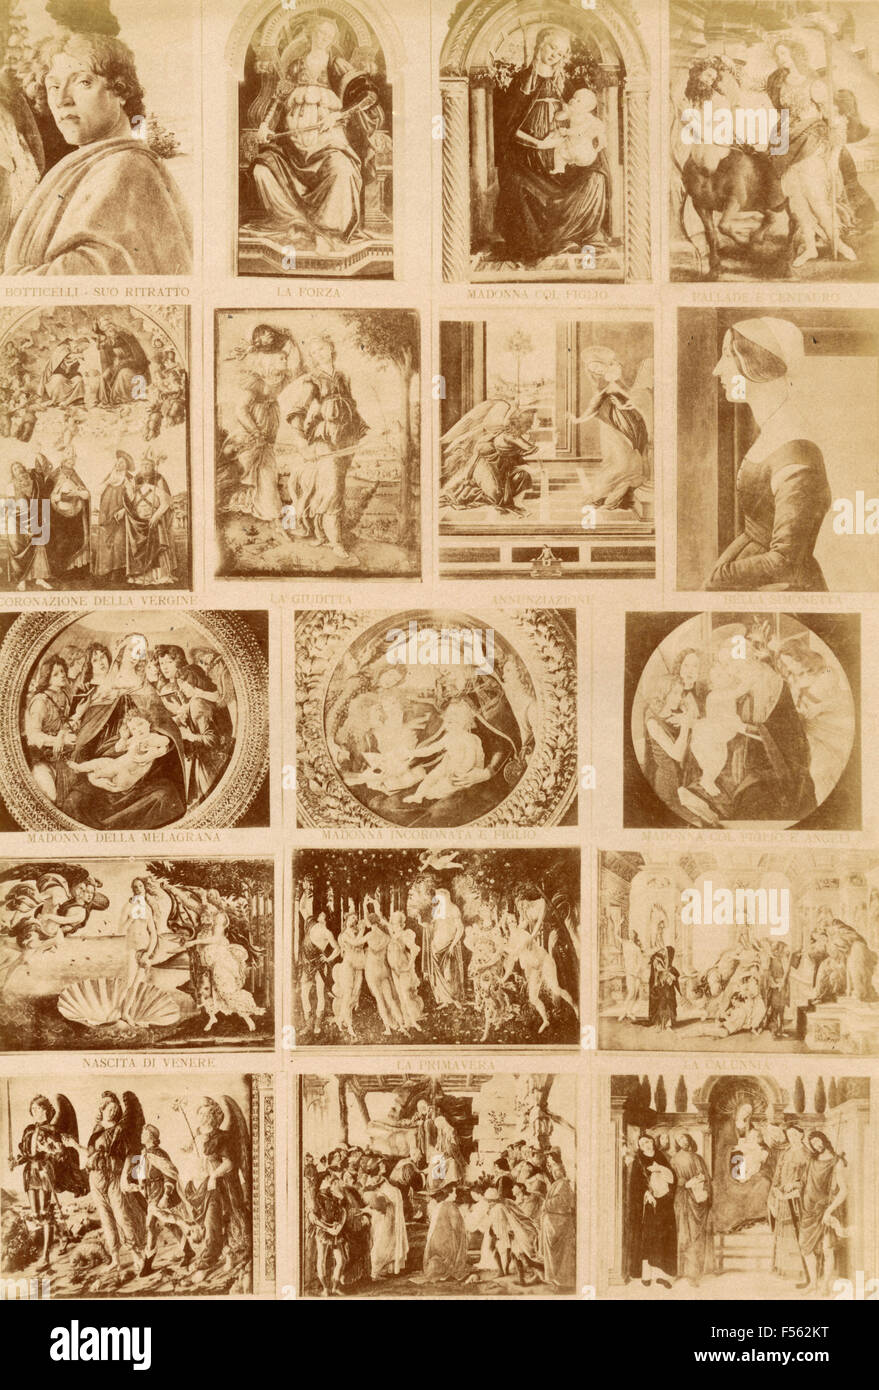 Gallerie fiorentine: grandi dipinti del Botticelli Foto Stock